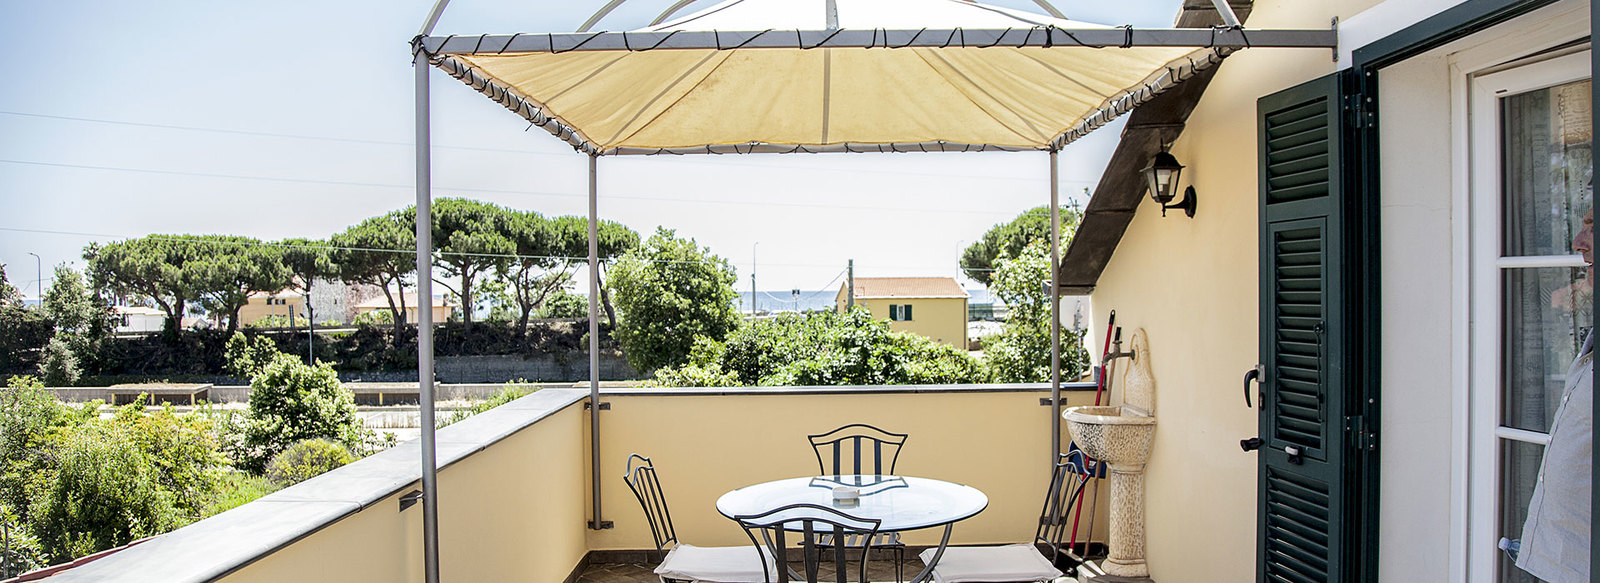 Appartamenti con piscina sulla Riviera Ligure